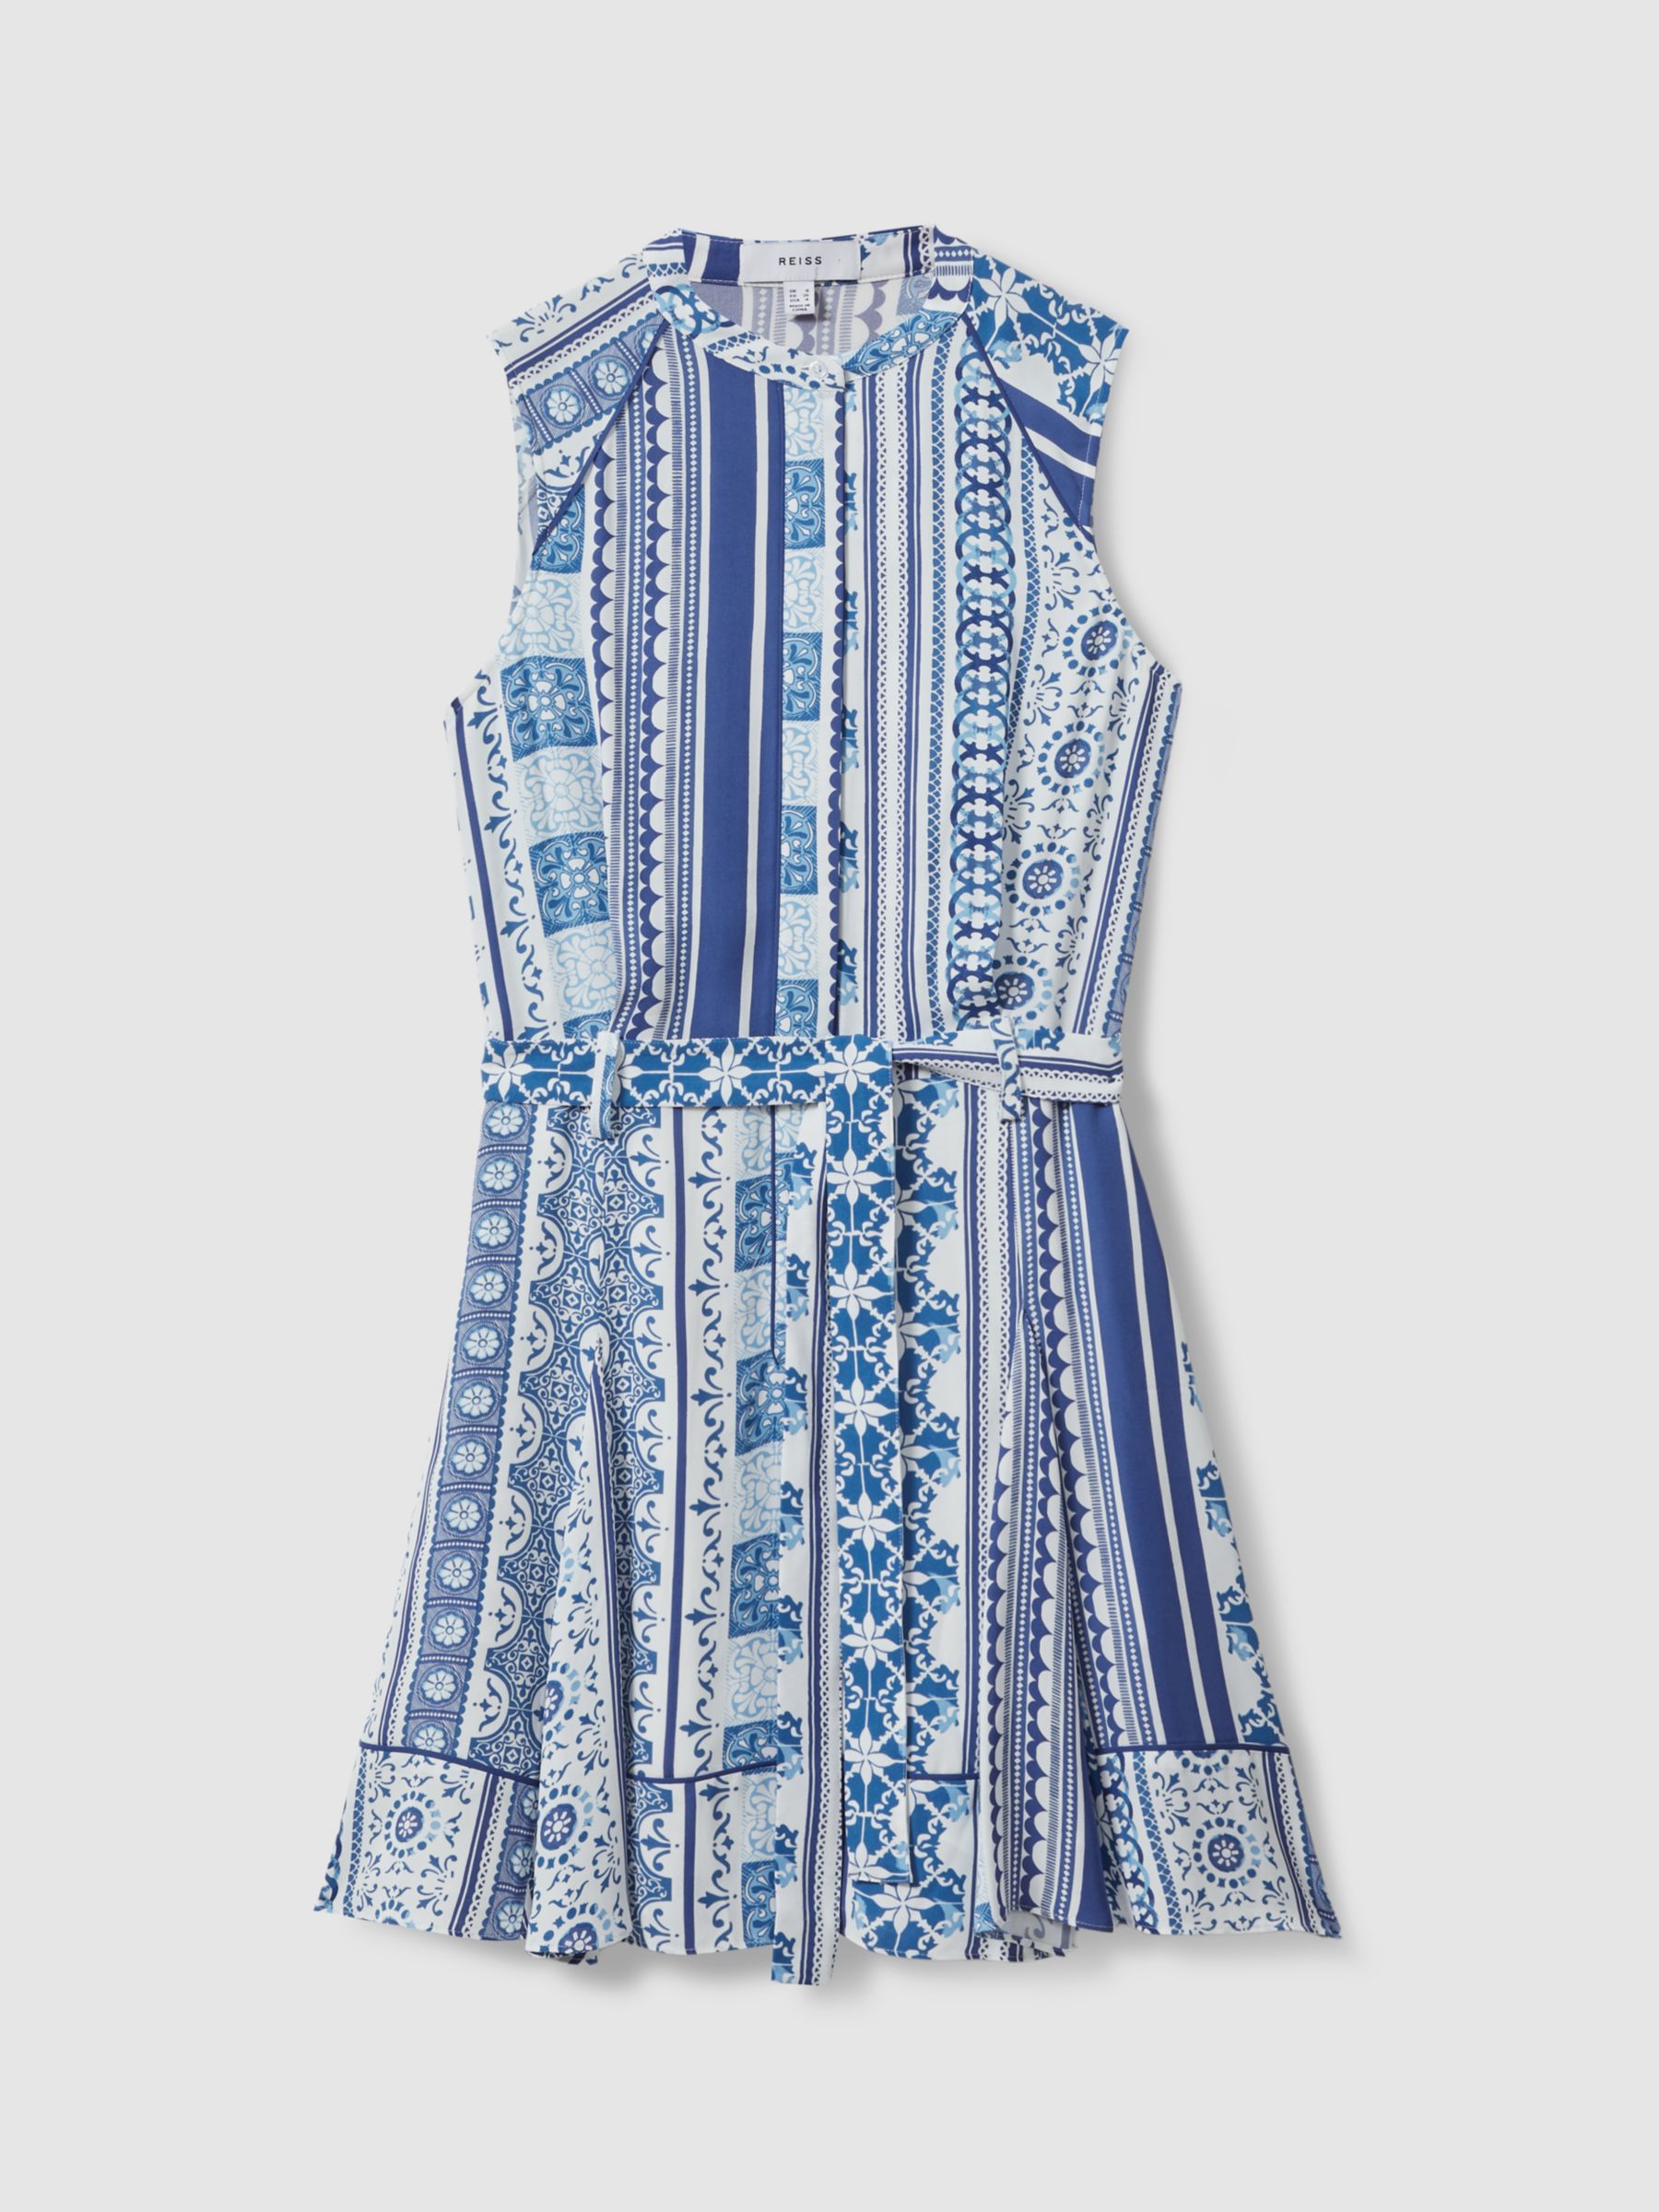 Reiss Florence Tile Print Mini Dress, Blue/Multi, 6